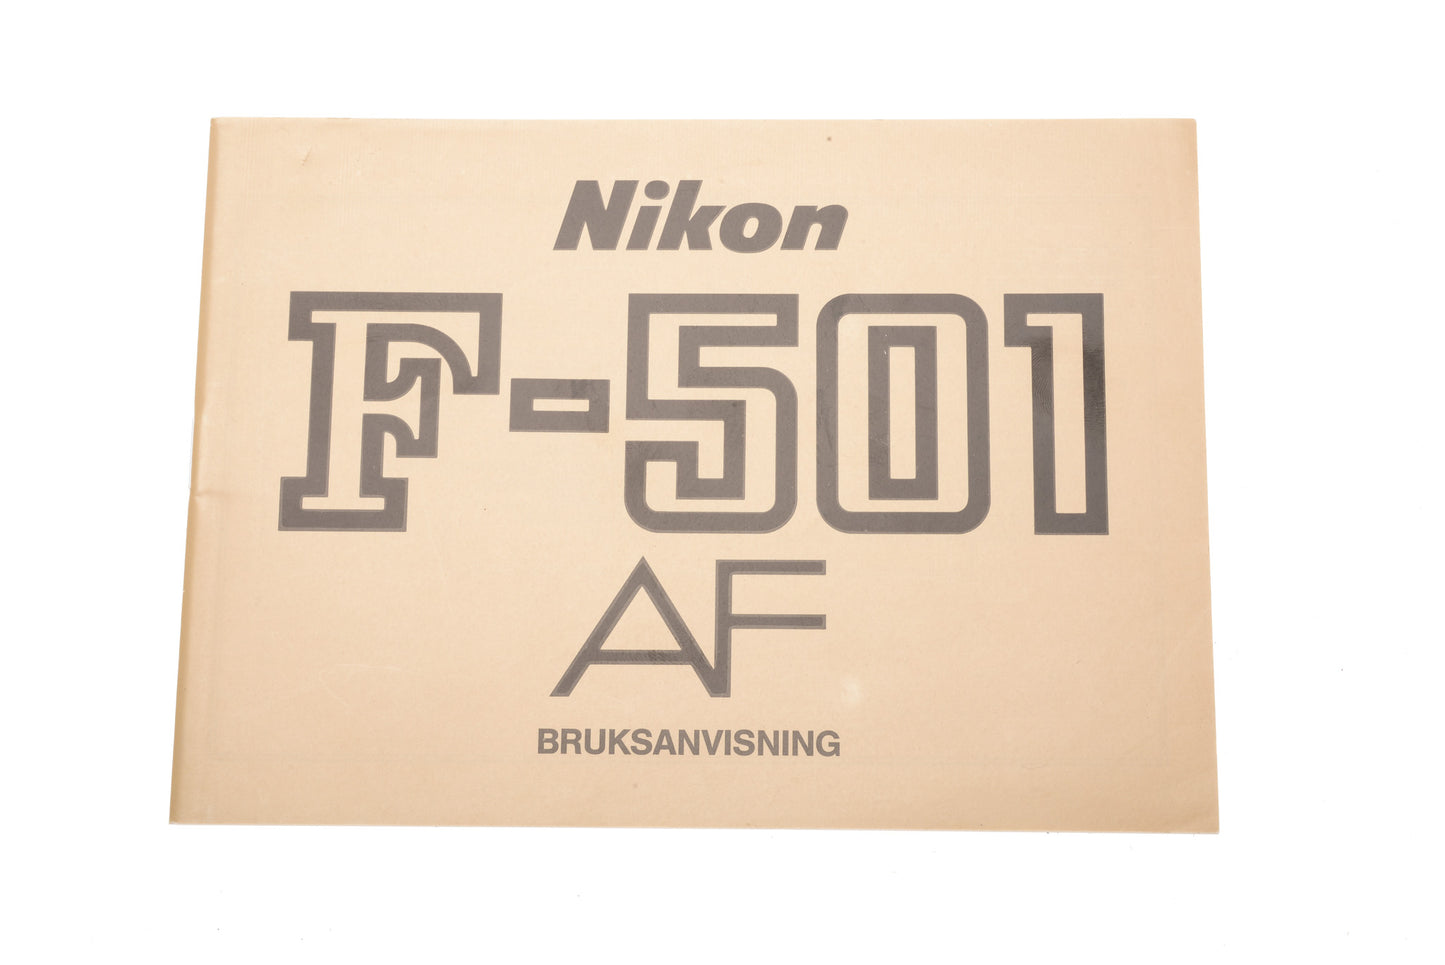 Nikon F-501 AF Instructions